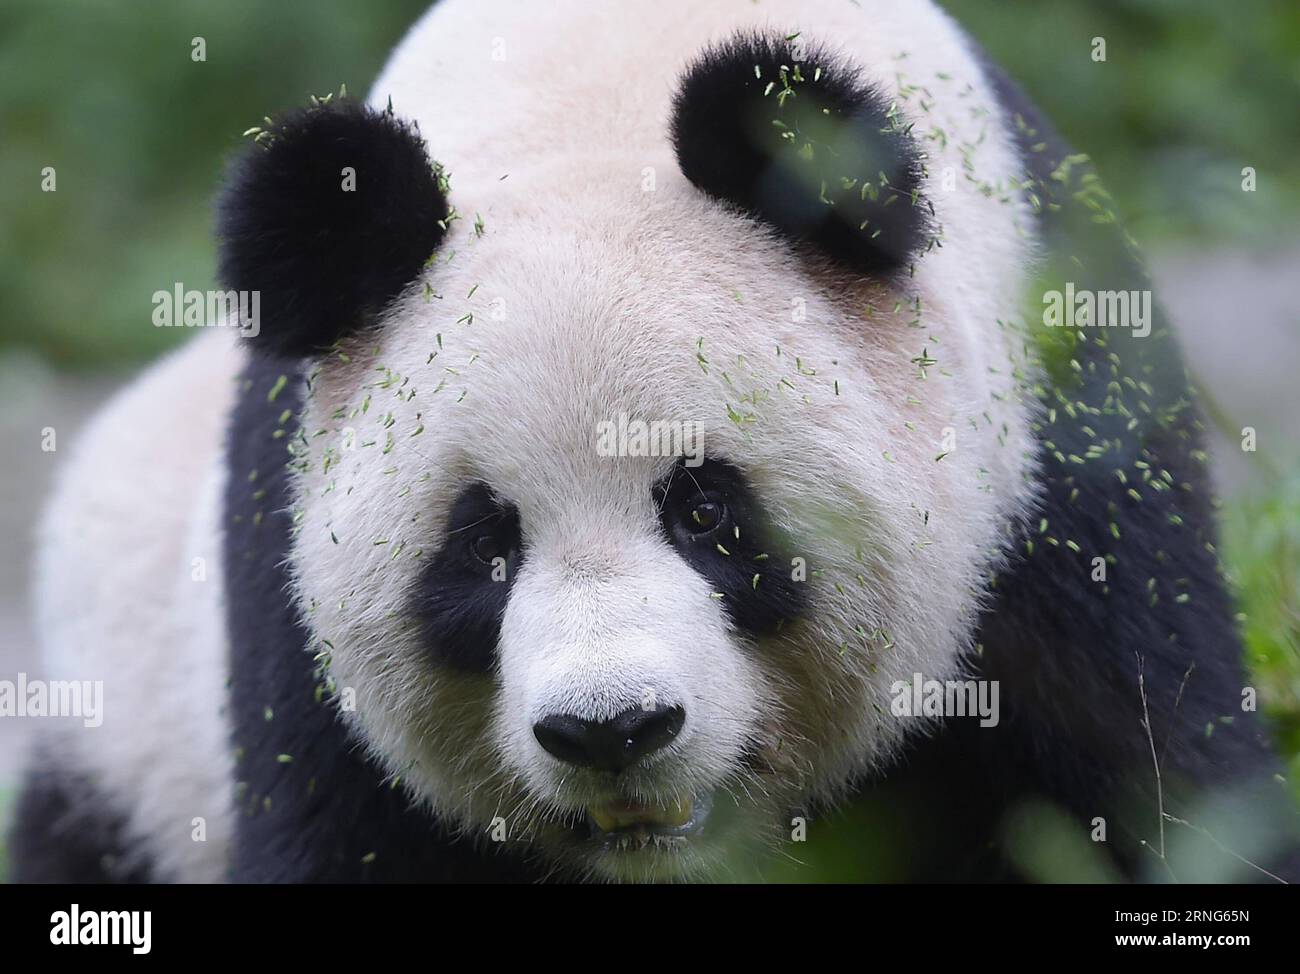 CHENGDU, 2016 – Giant Panda Sixue wird in der Hetaoping Wild Training Base, südwestchinesische Provinz Sichuan, 29. August 2016 gesehen. Sixue wird ihr Junges Yingxue auf der Suche nach Nahrung und Wasser Schulen und dabei während der ersten Phase des Wildtrainings Raubtiere meiden. Mit der zunehmenden Anzahl von Pandas, die in Gefangenschaft gezüchtet und gehalten werden, begann China 2006, Pandas in Gefangenschaft in die Wildnis zu schicken, um die genetische Vielfalt und Qualität der Arten zu verbessern. ) (wx) CHINA-CHENGDU-RIESE PANDA-RÜCKKEHR ZUM WILDTRAINING (CN) XuexYubin PUBLICATIONxNOTxINxCHN Chengdu 2016 Giant Panda IS Lakes in H Stockfoto